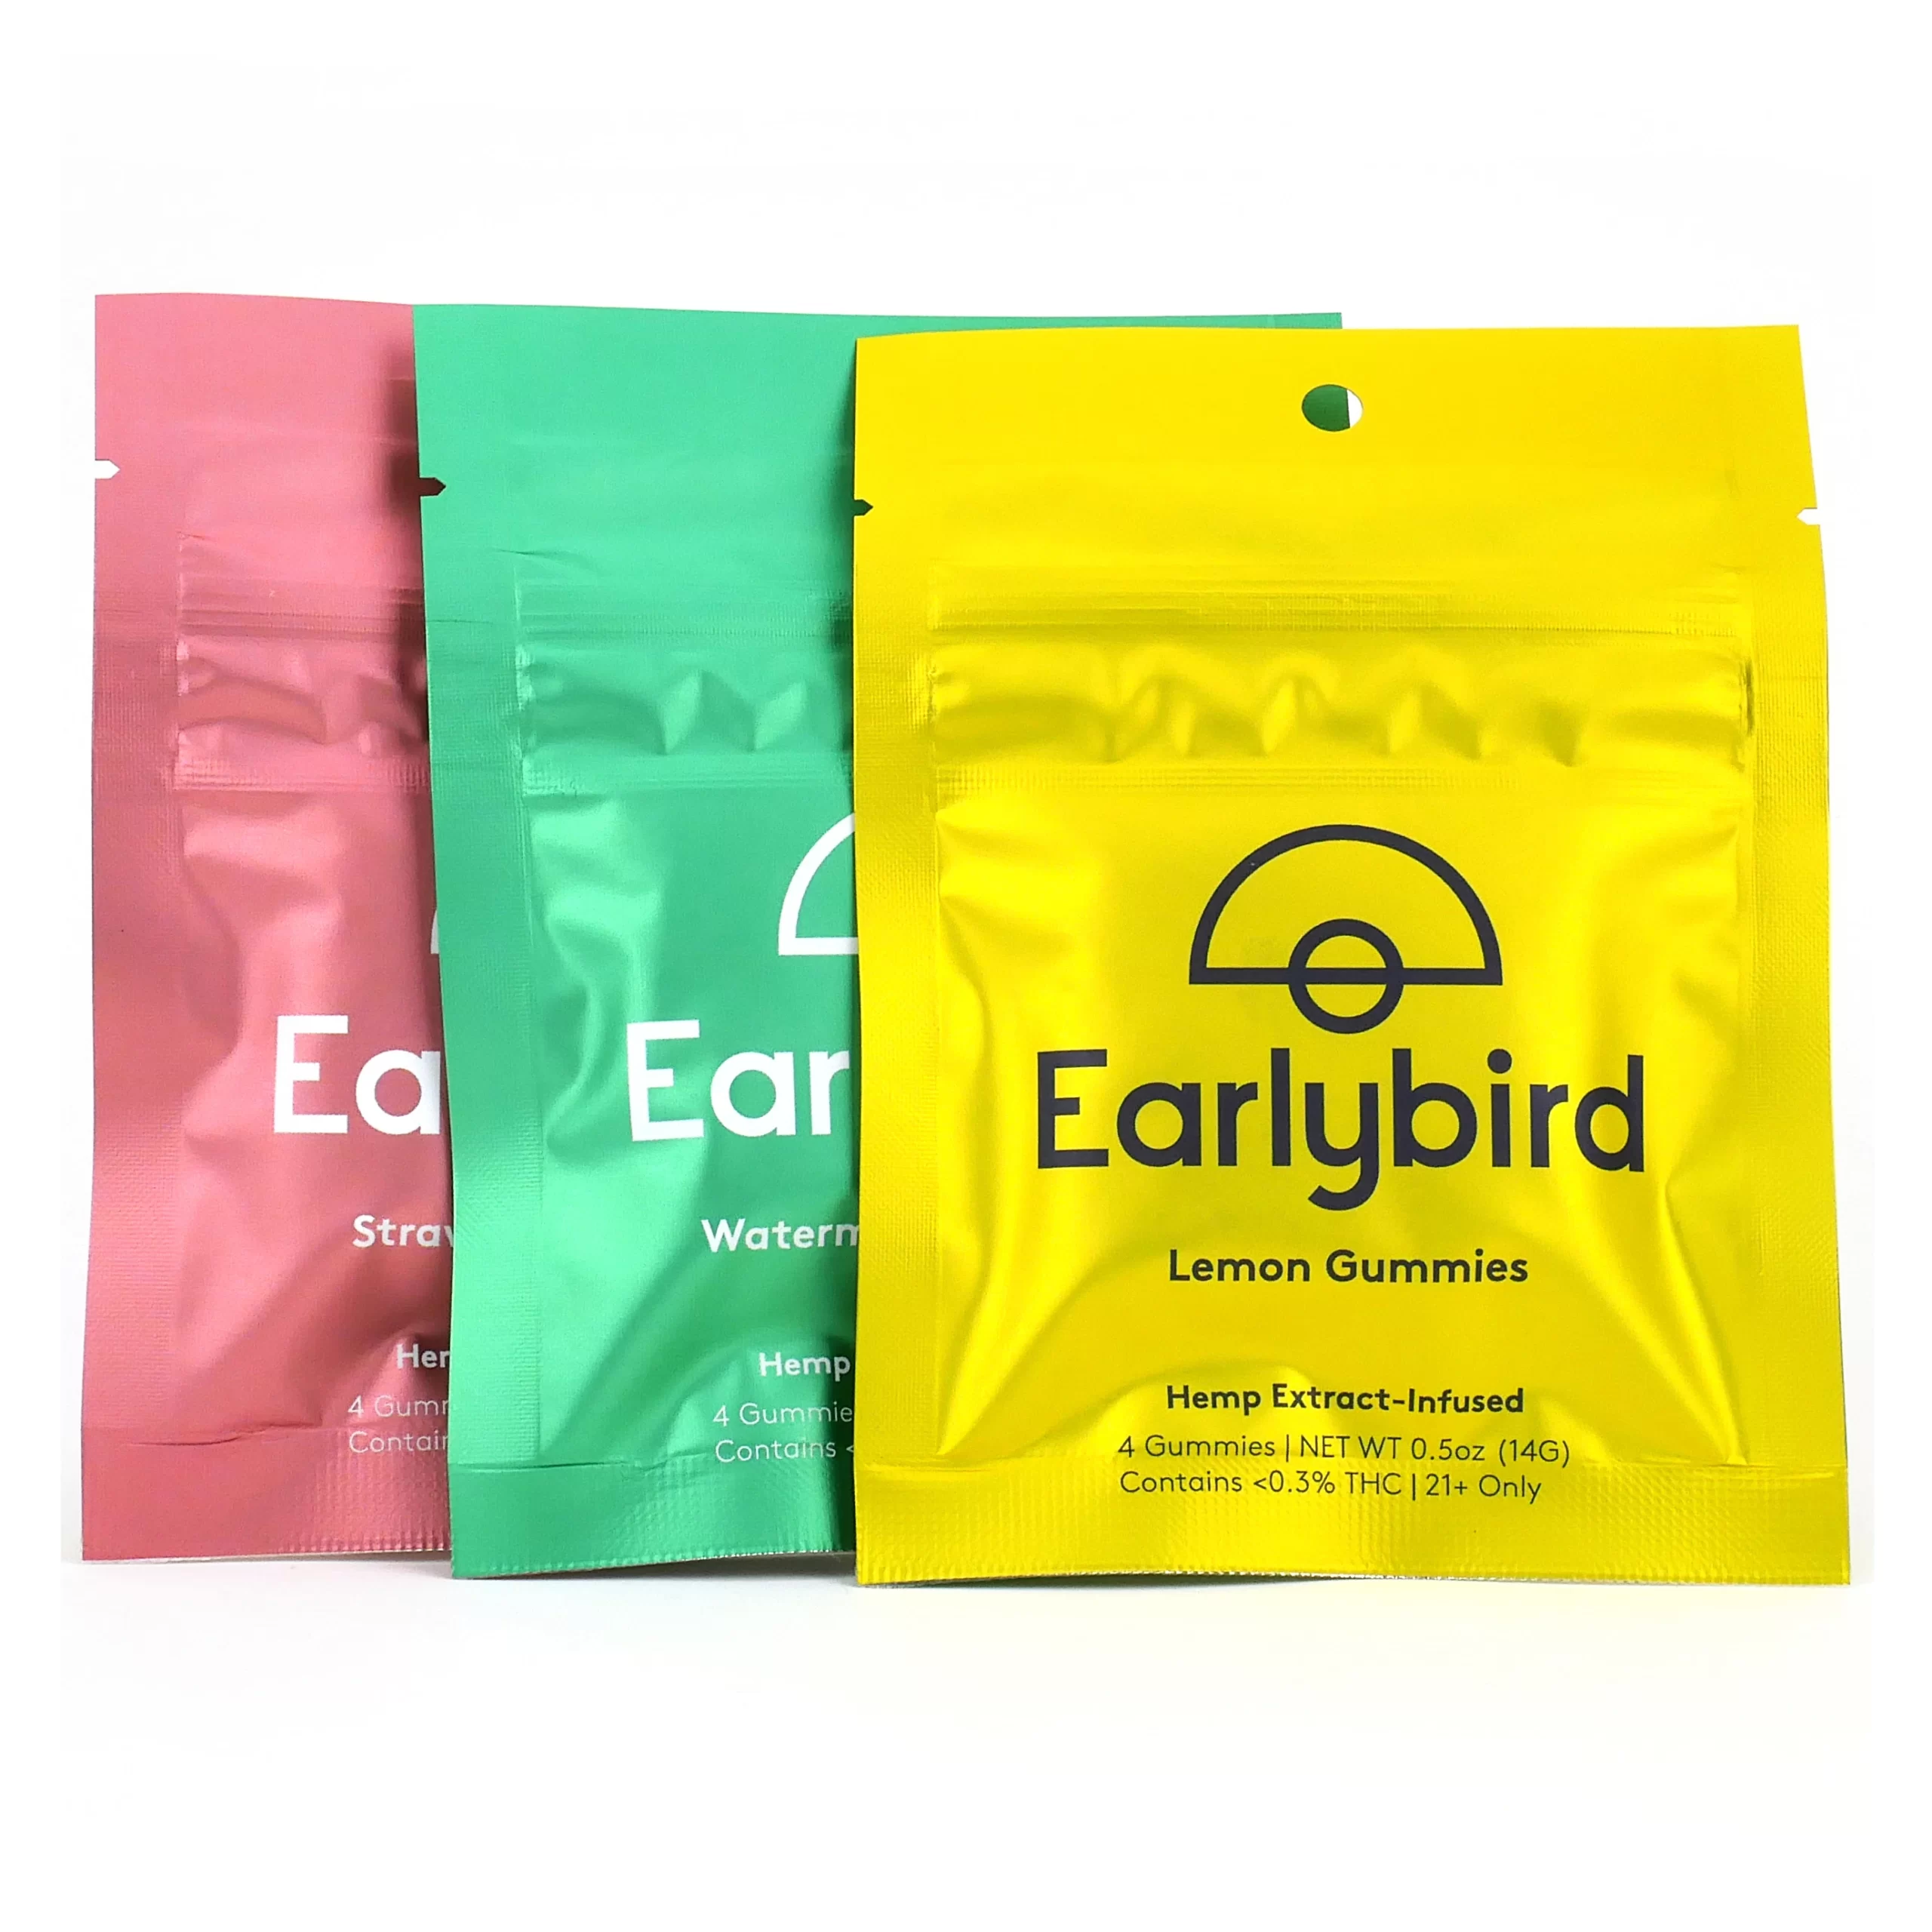 Earlybird CBD Gummies: Is It Safe?! Read Earlybird CBD Gummies Reviews, Benefits, Side Effects & Shocking News?